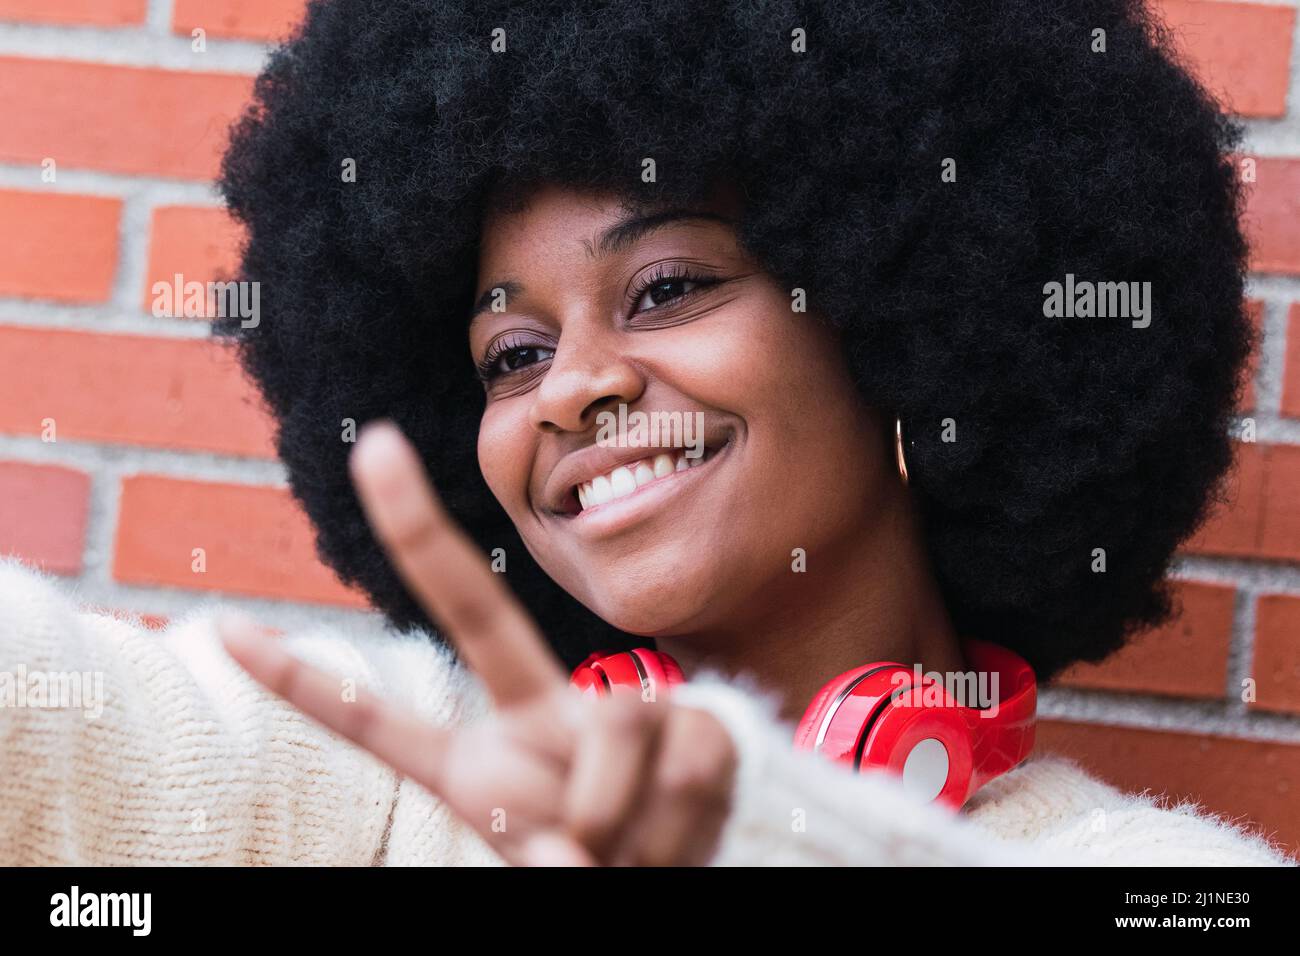 Gros plan portrait de la belle femme afro-américaine avec une coiffure afro-américaine, un pull blanc et des yeux fermés souriant tout en montrant le geste de paix Banque D'Images